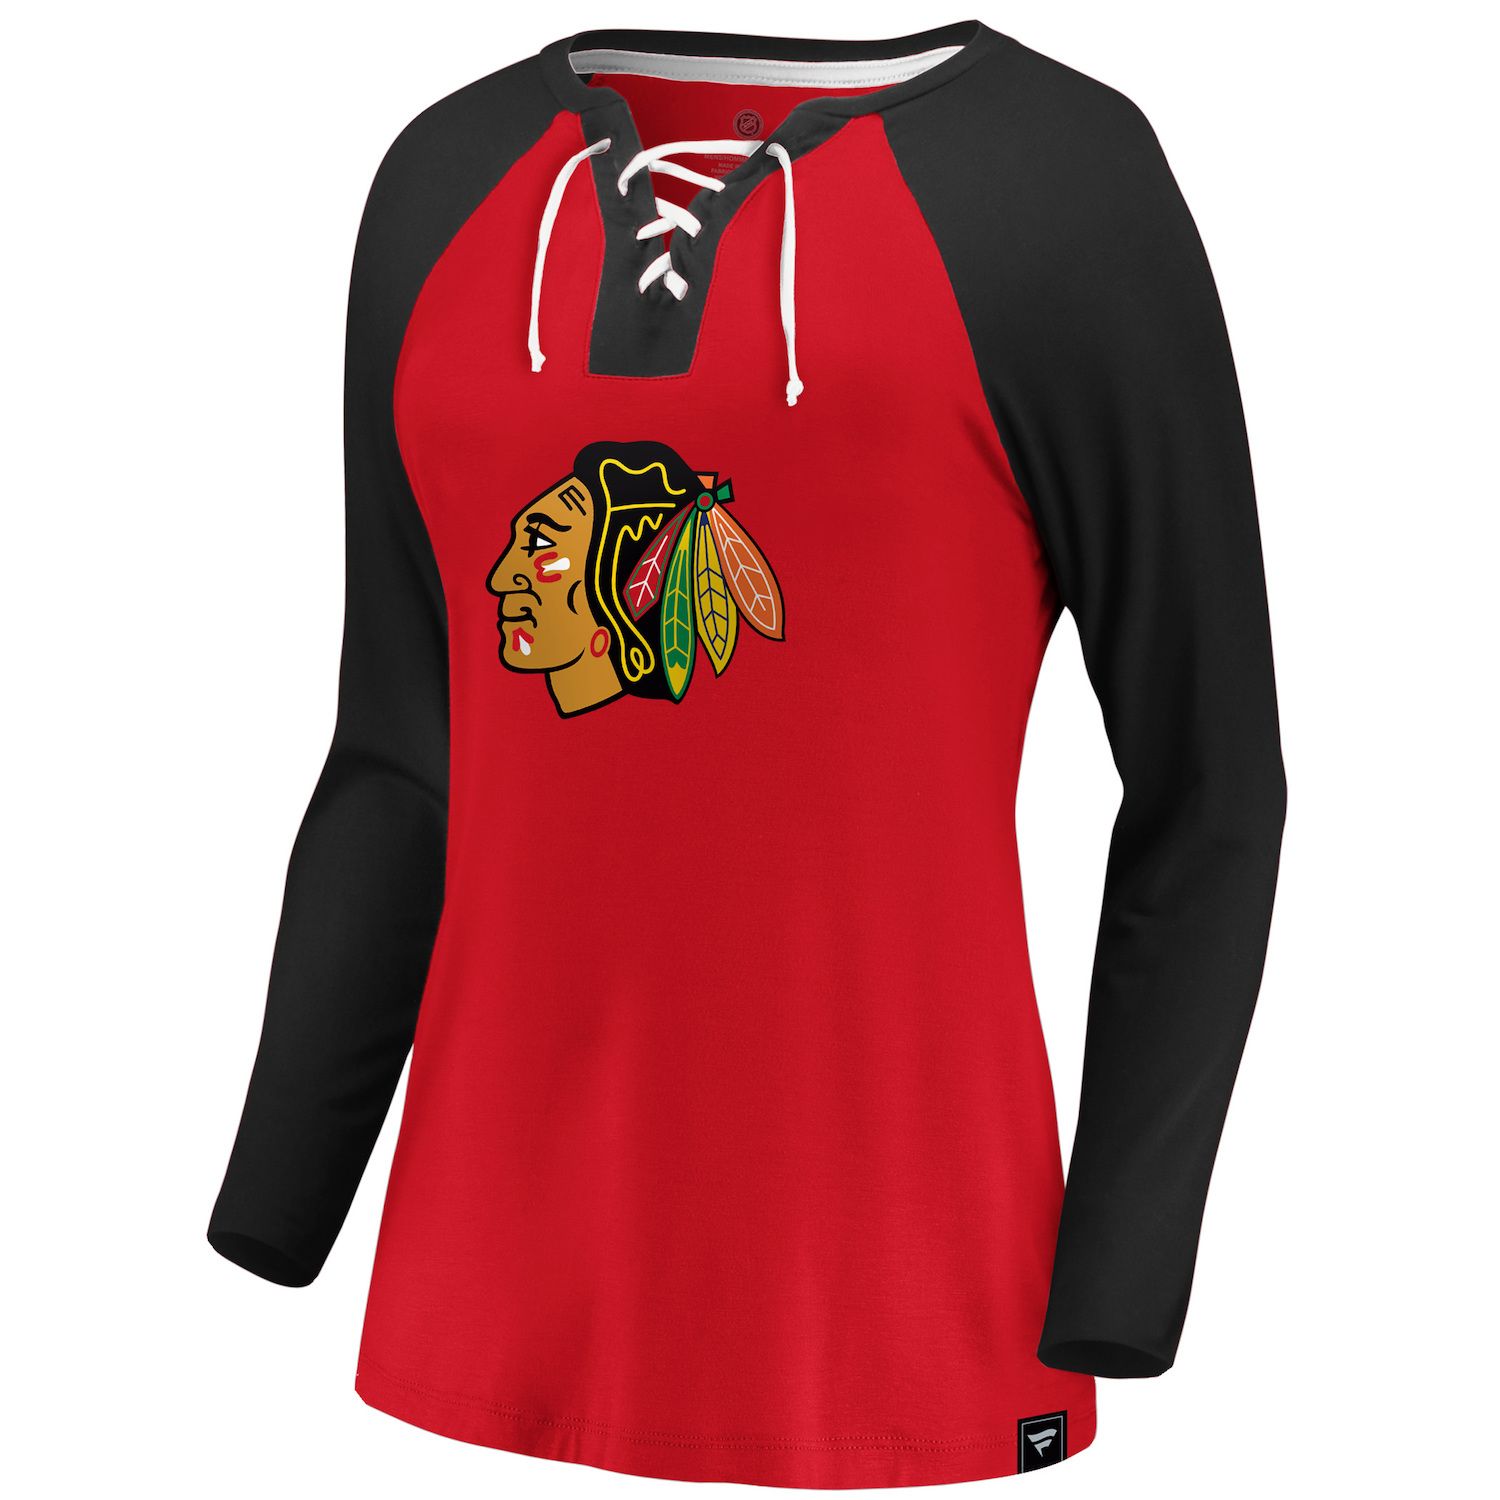 chicago blackhawks womens shirt